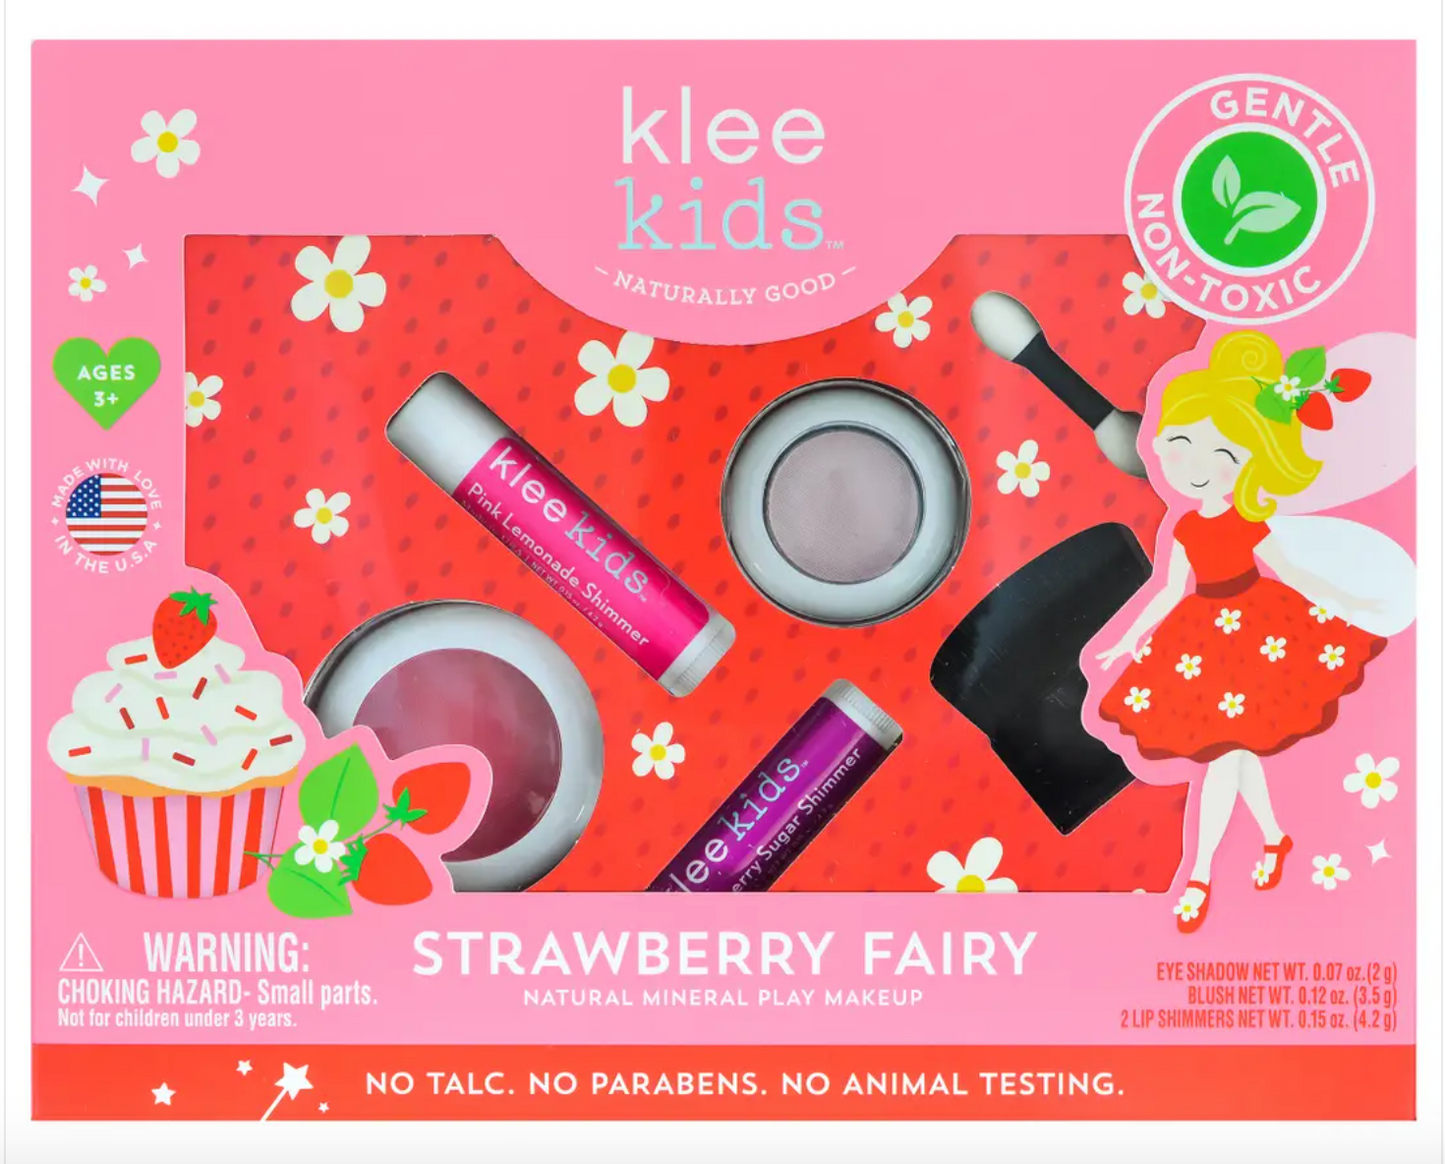 Klee 4pc Makeup Kit